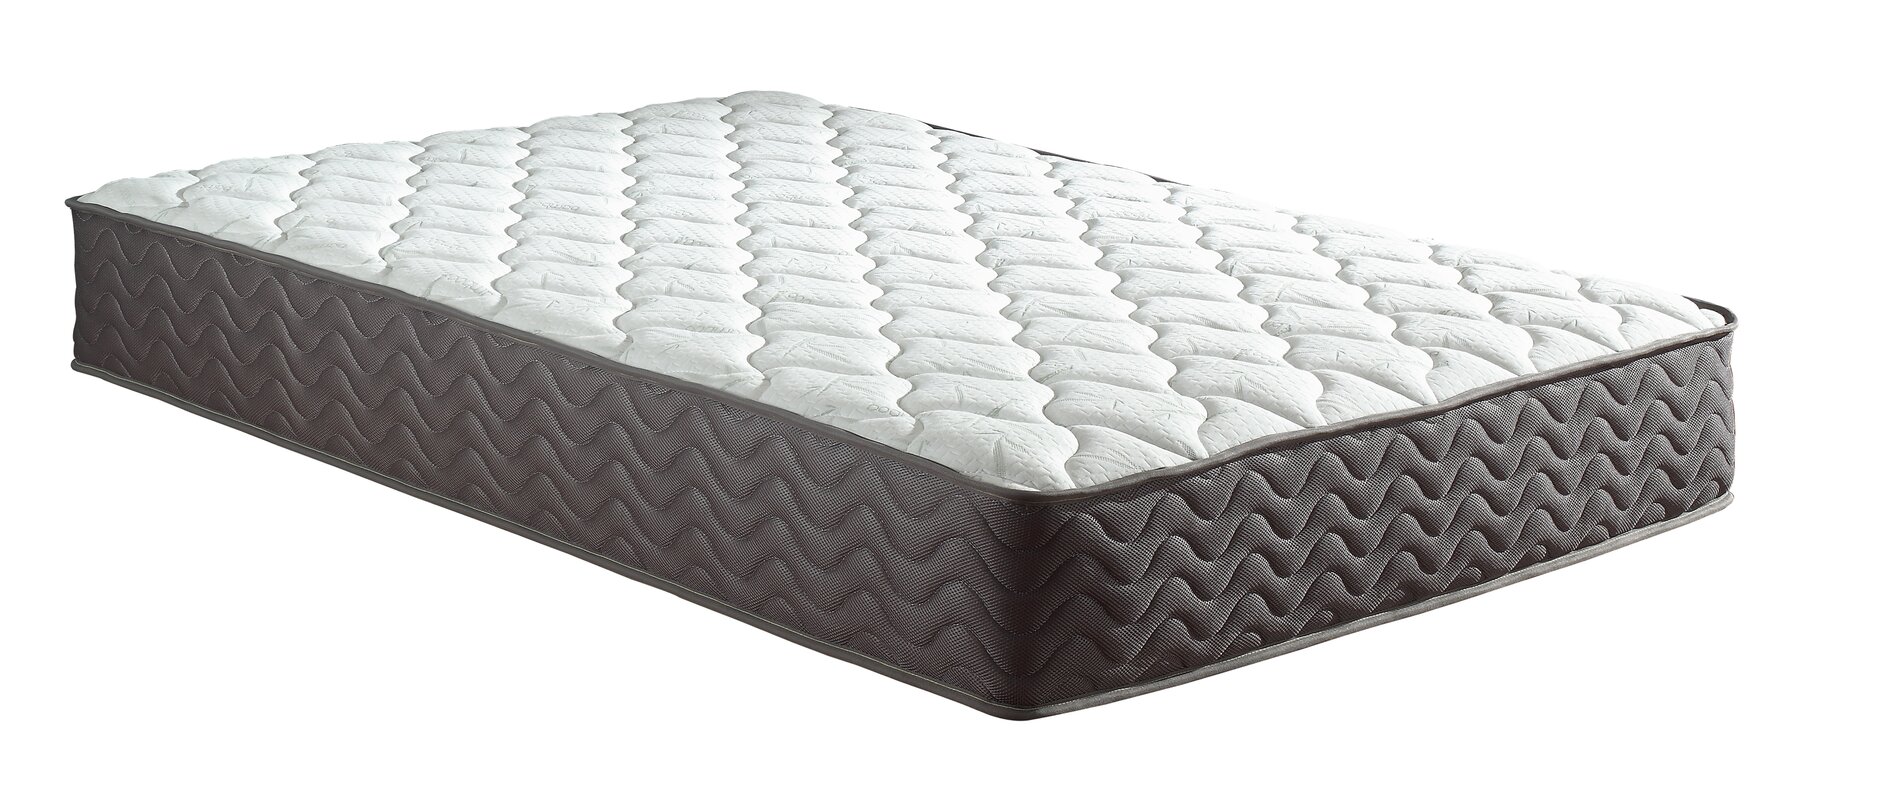 madison broadway mattress review